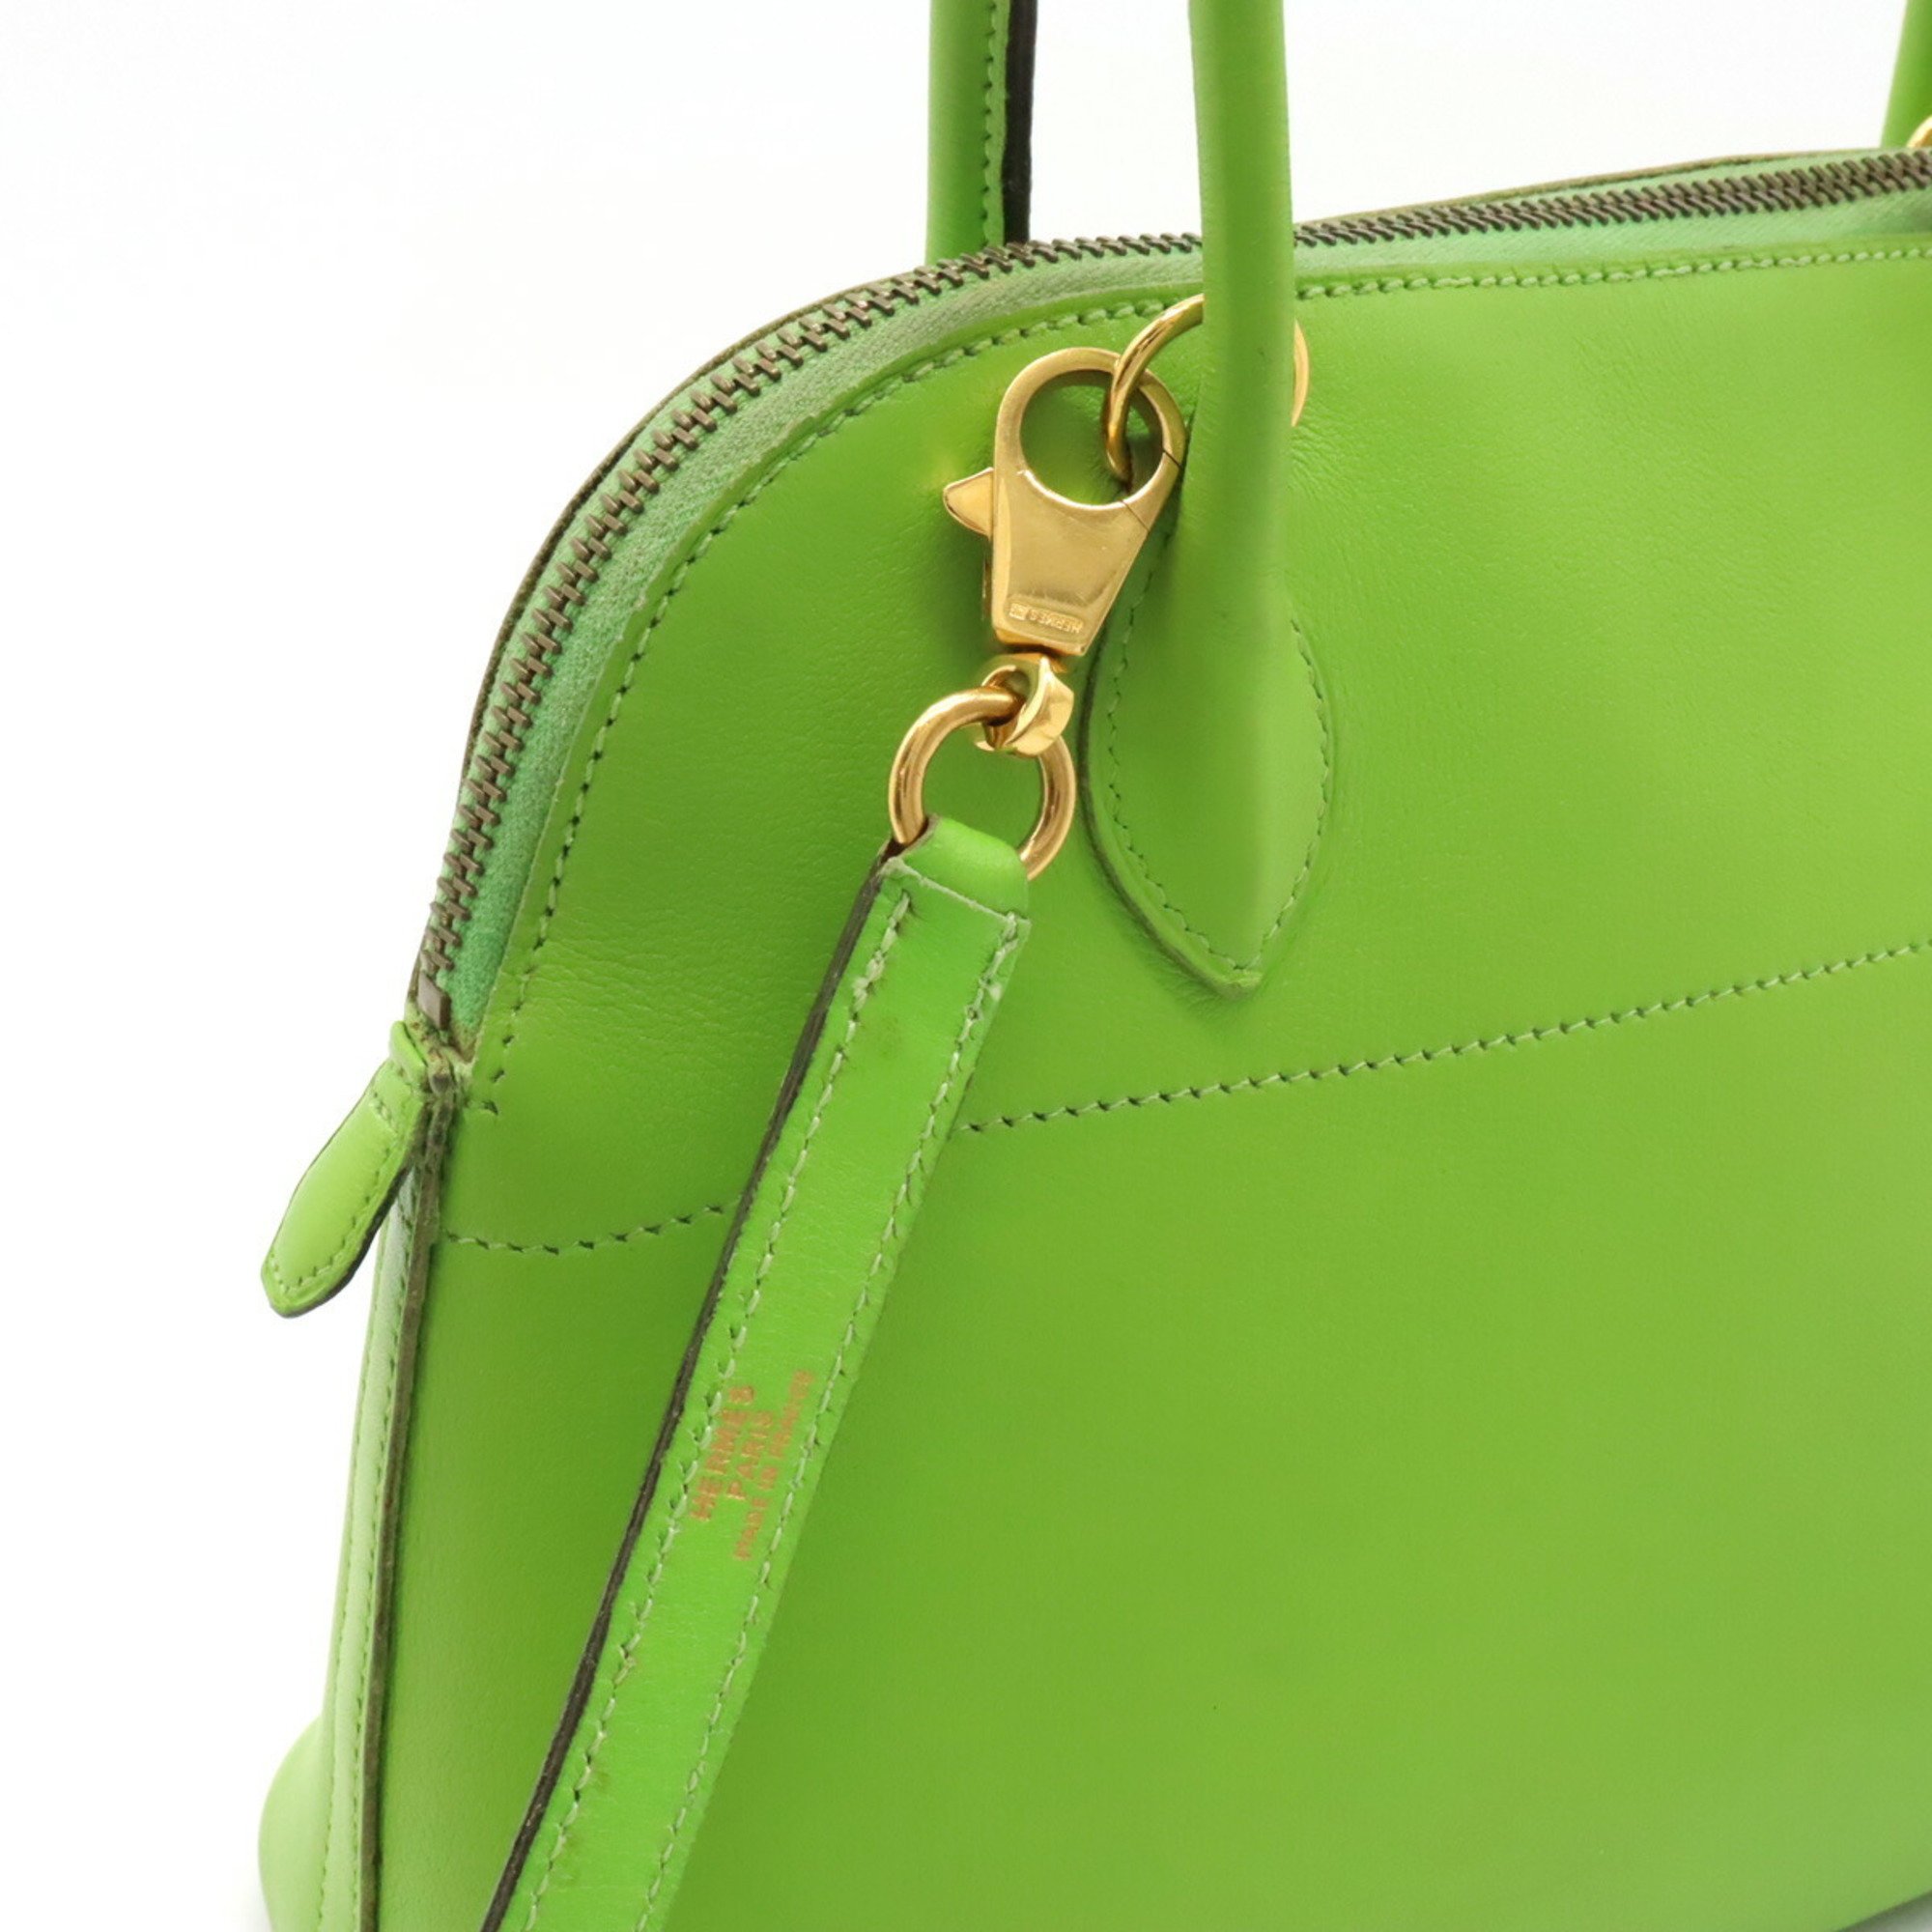 HERMES Bolide 27 handbag shoulder bag leather green V stamp